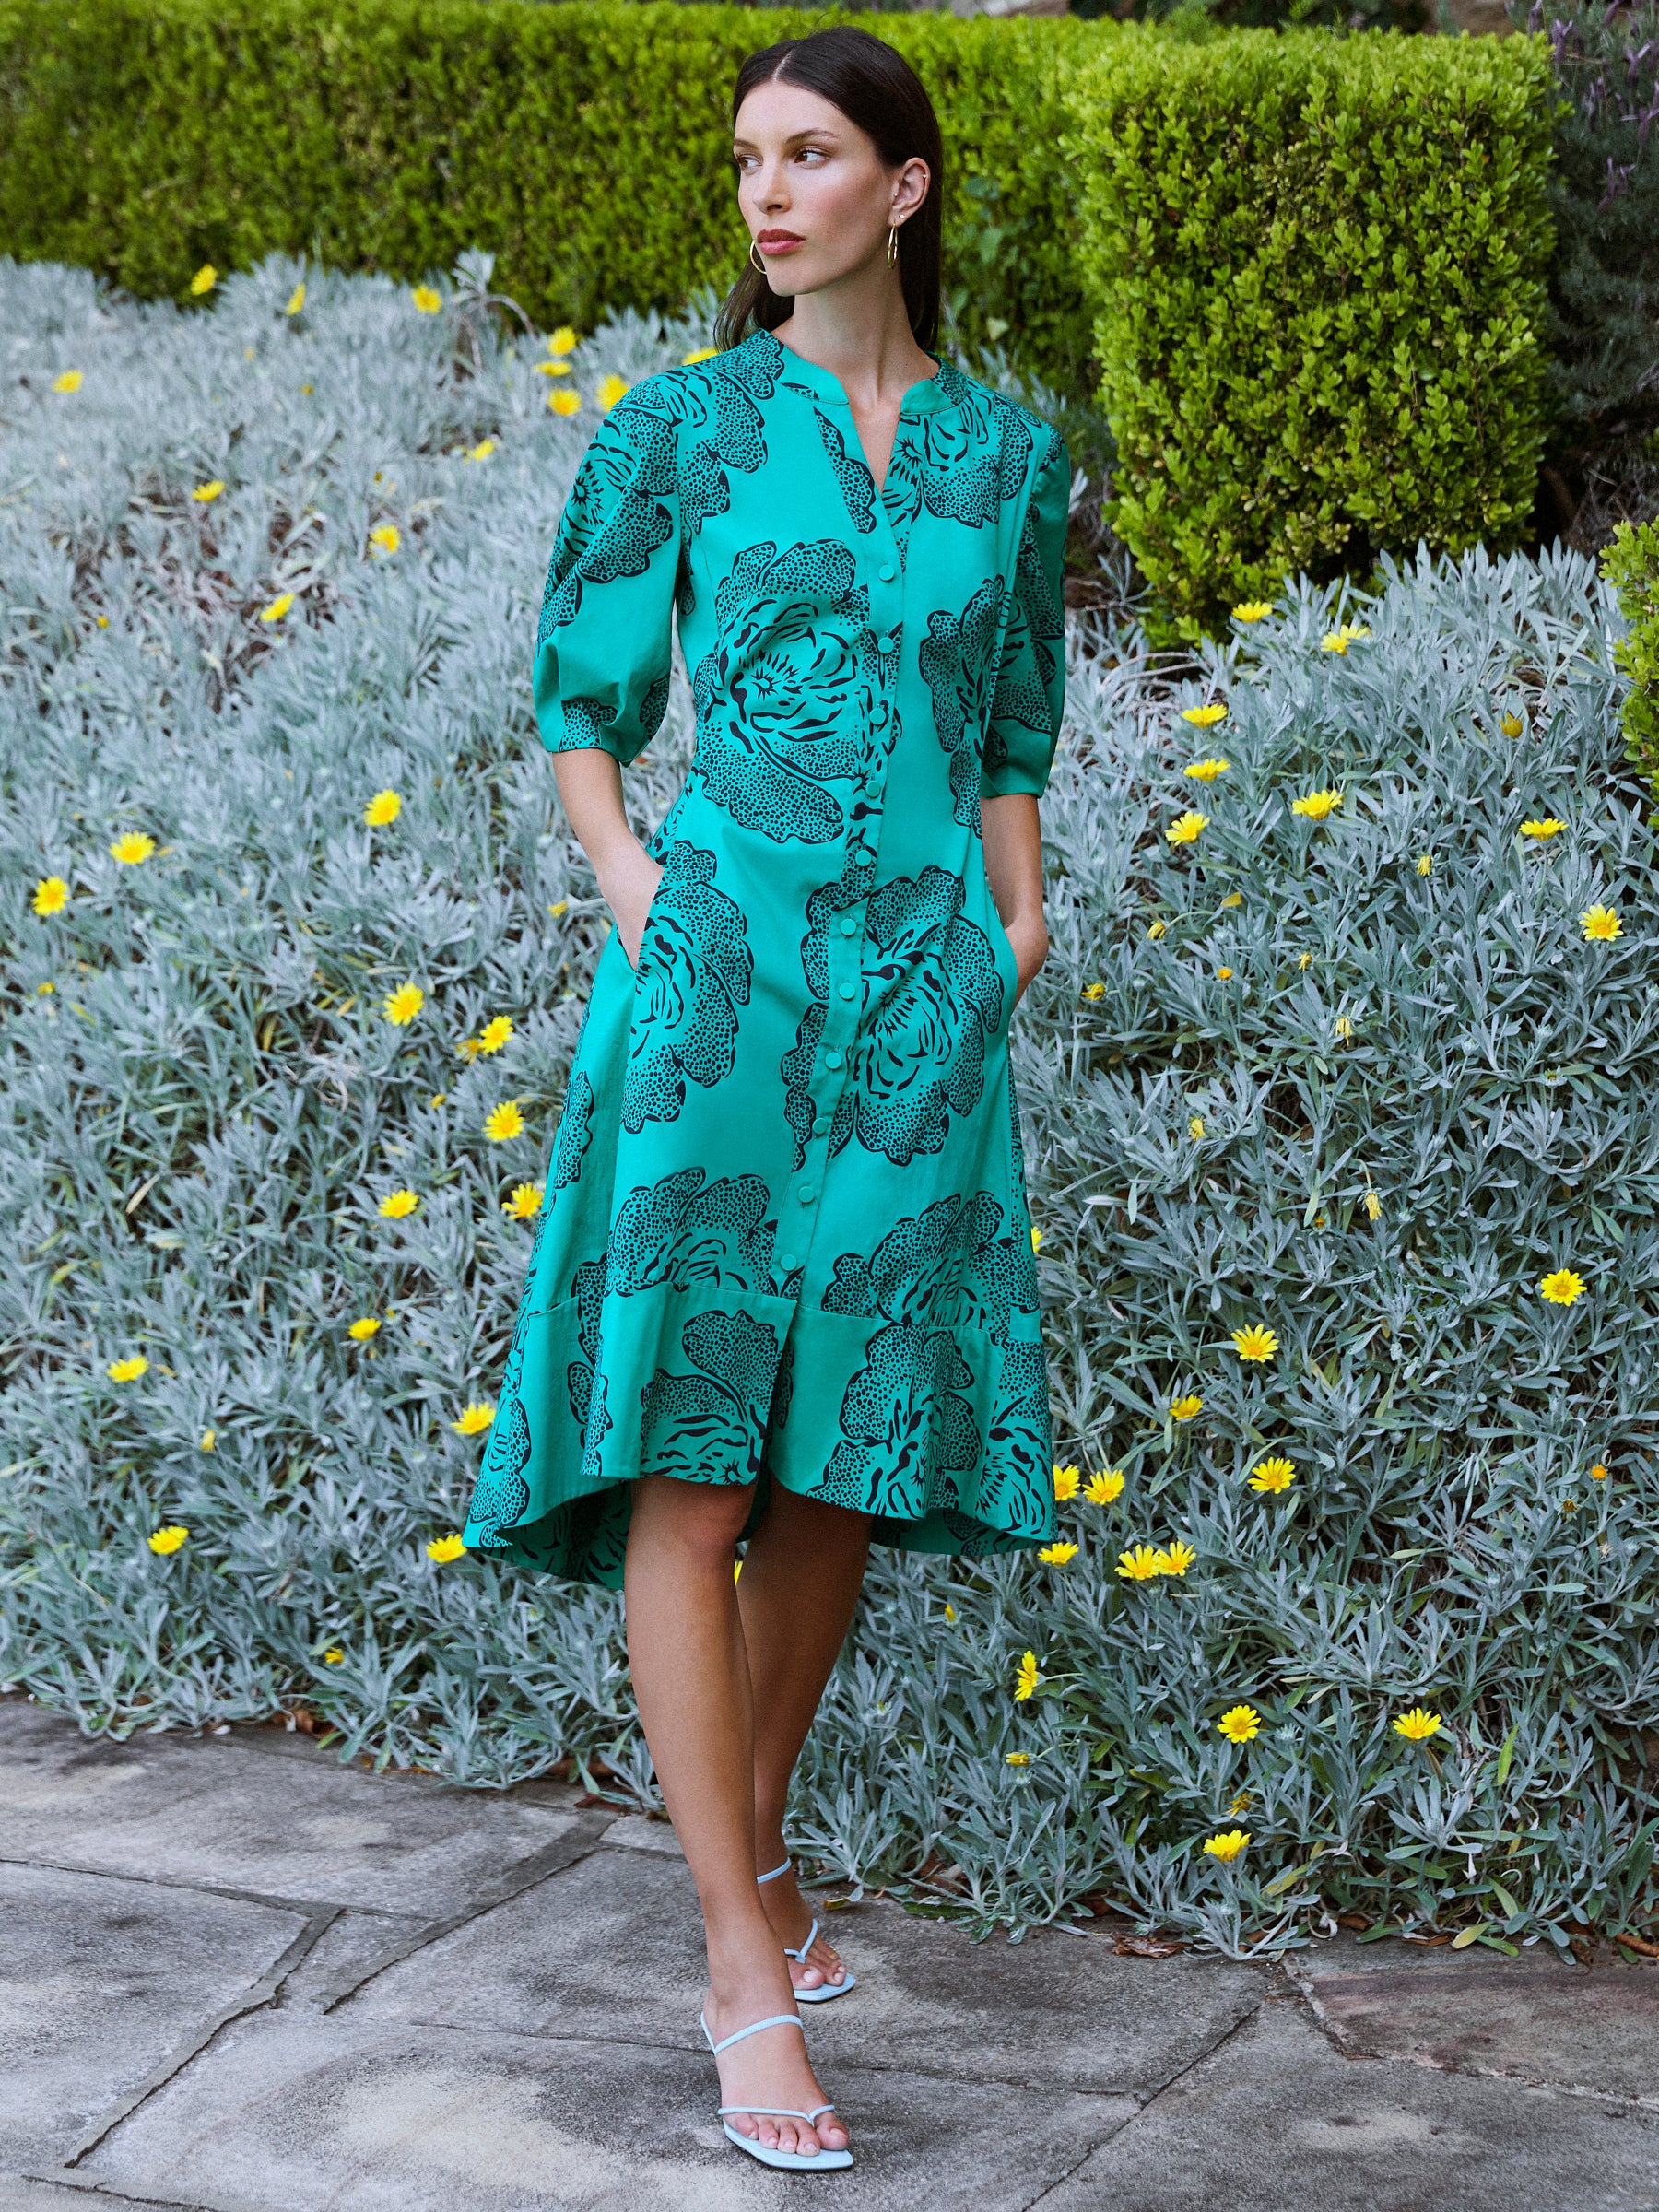 Womens Review Australia Dresses  Spring Blossom Jersey Dress